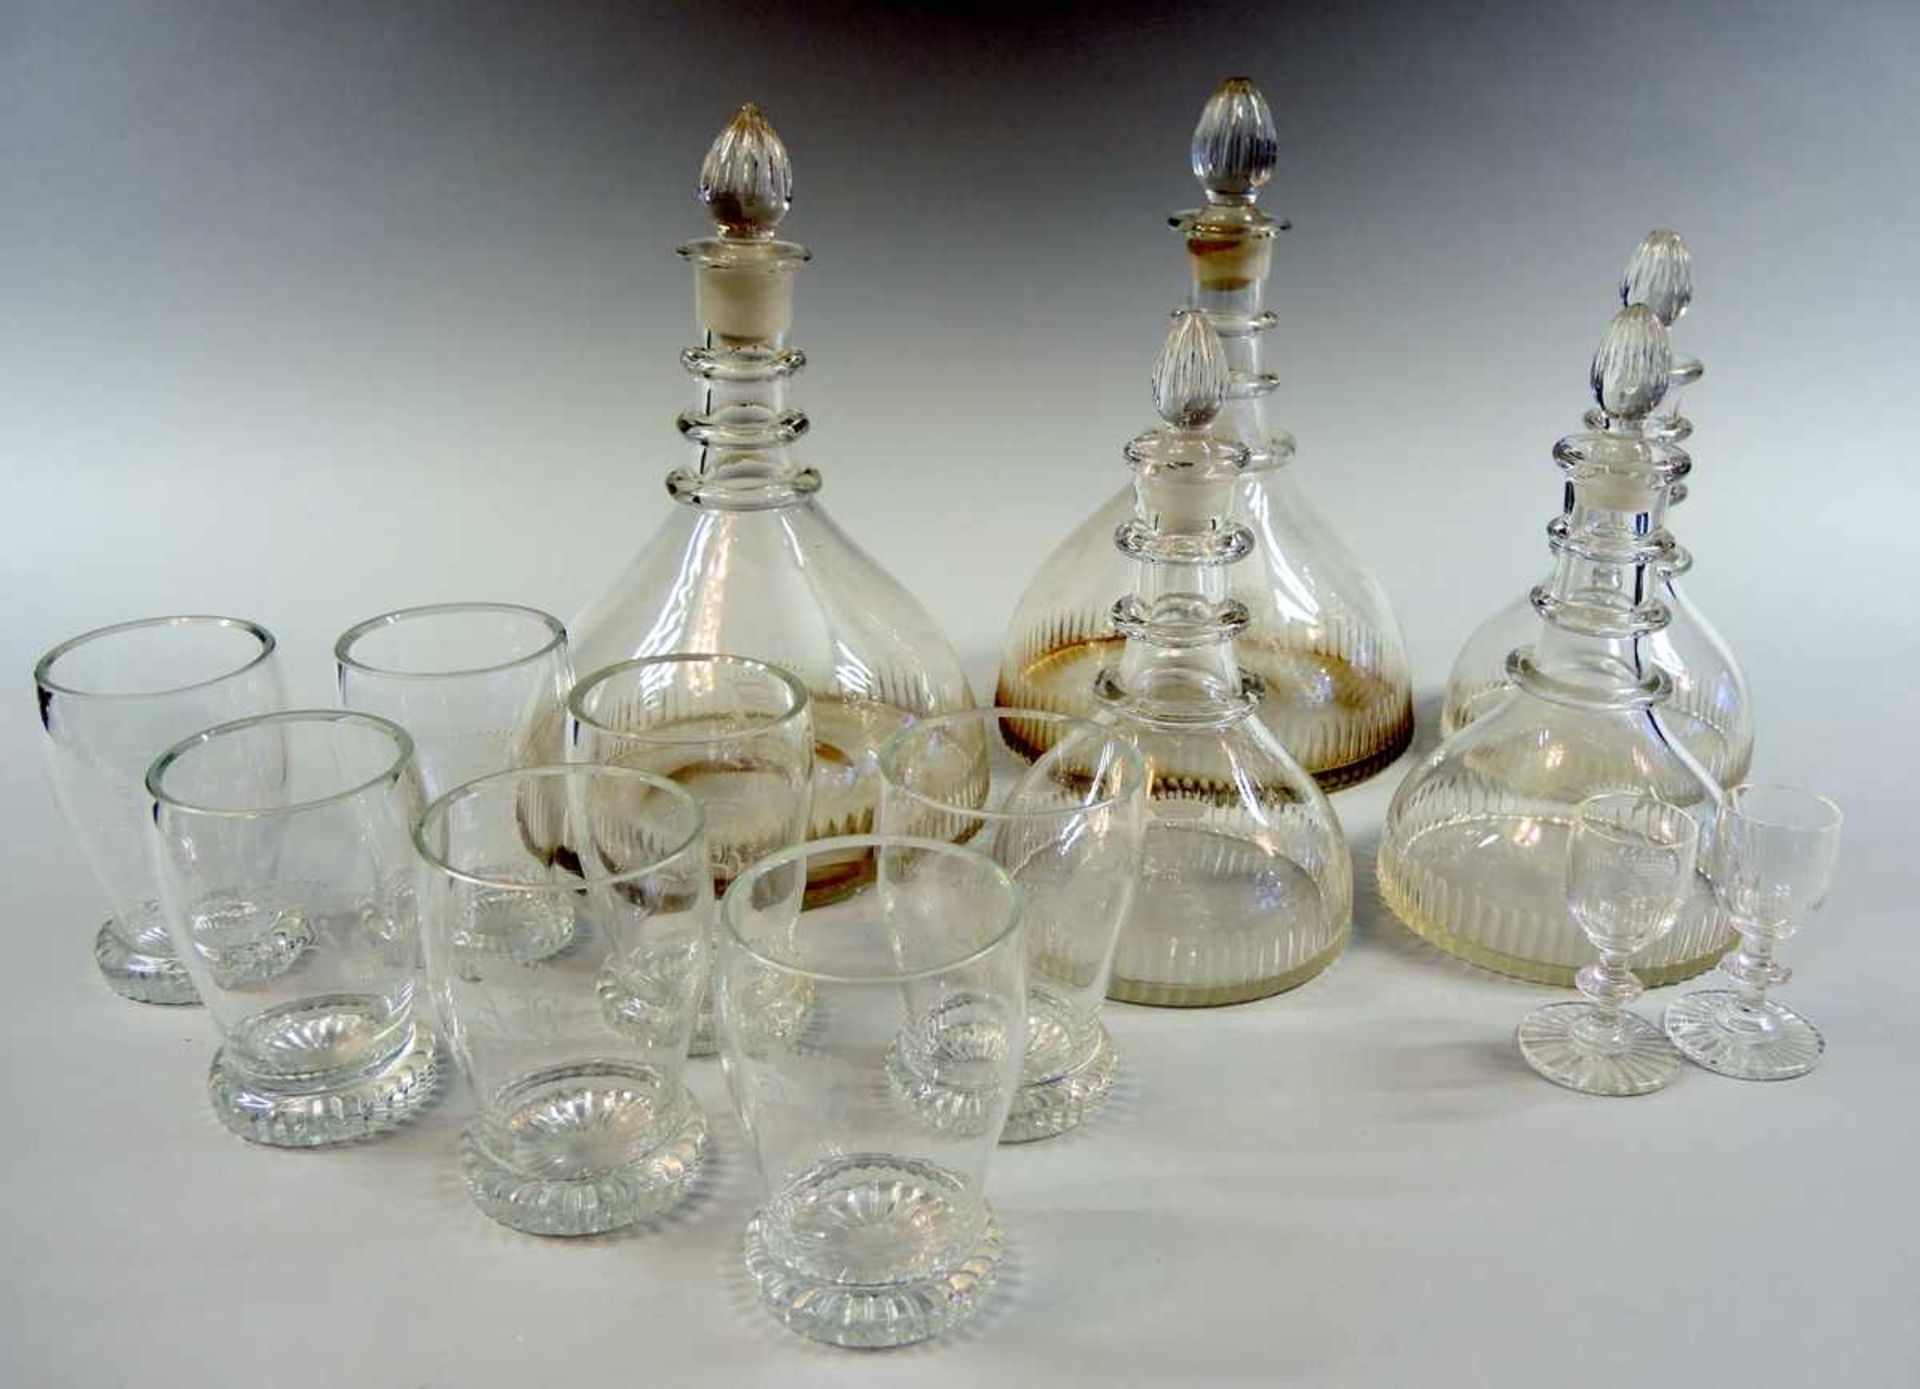 Feines Glasservice Glas. Service bestehend aus 2 großen Karaffen, 3 kleinen Karaffen, 7 Gläsern